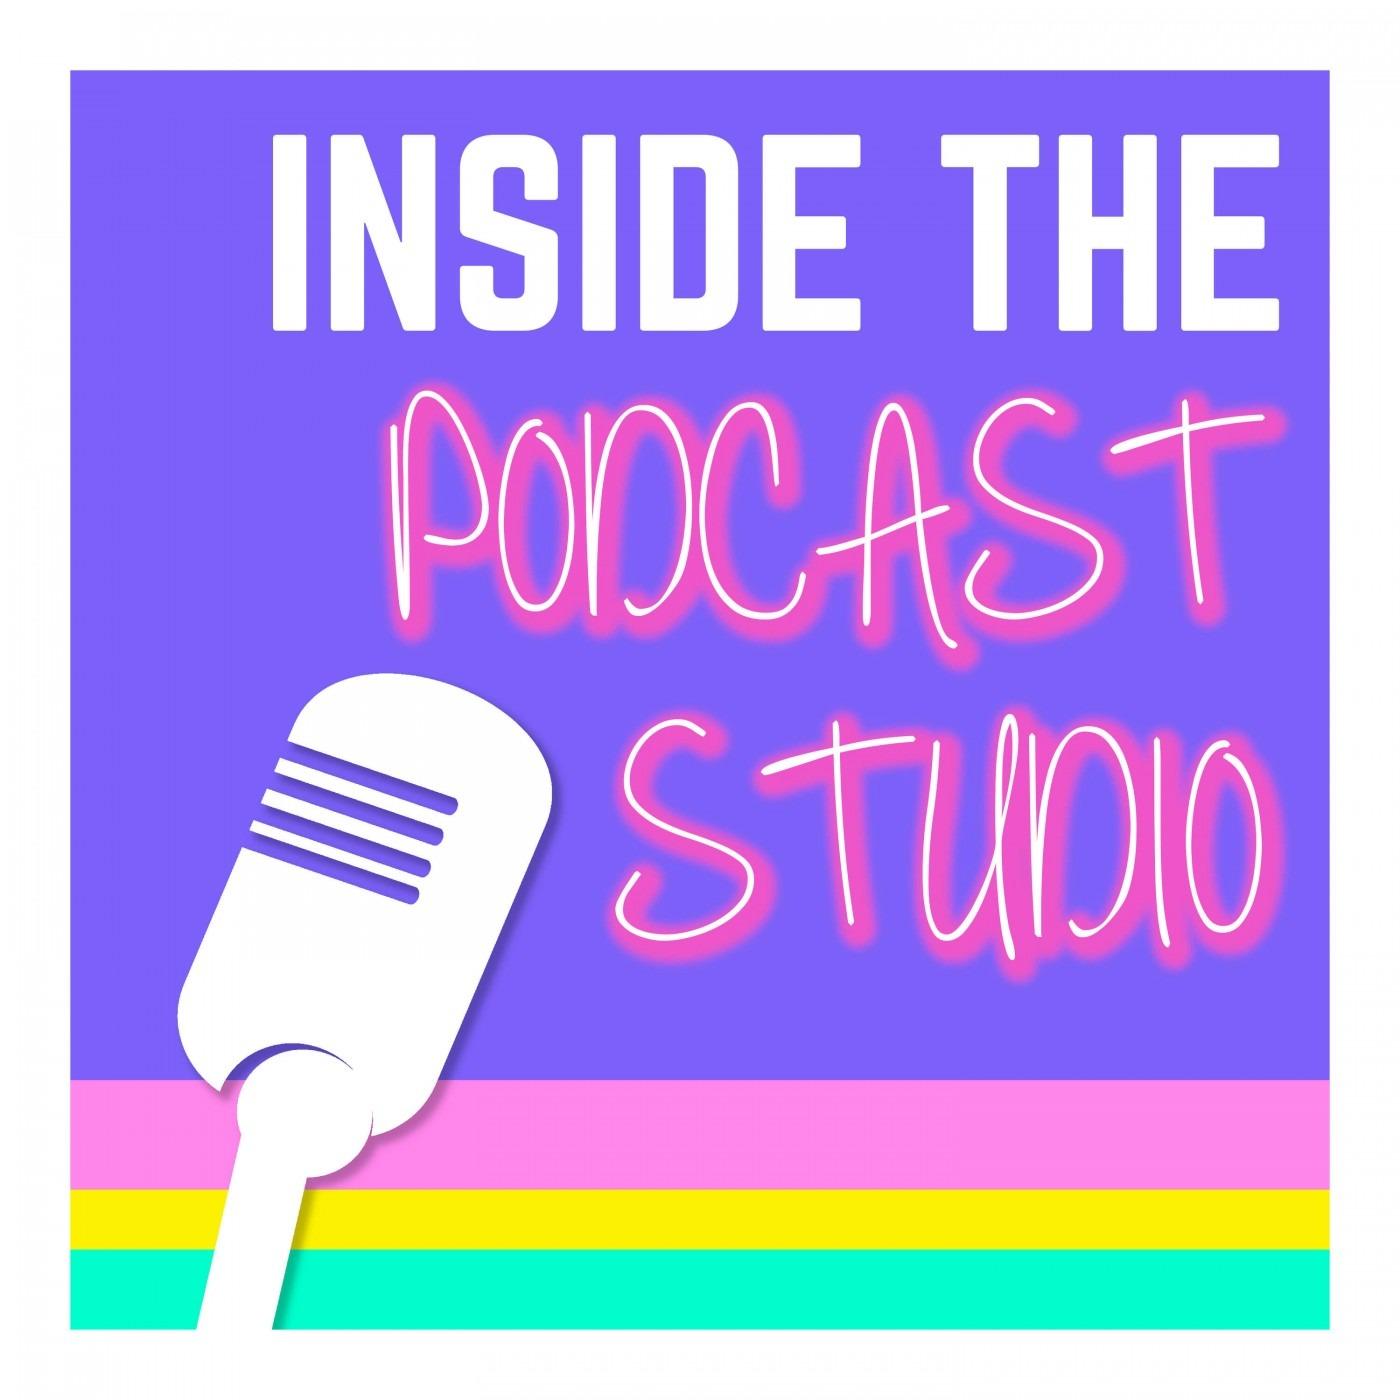 Inside the Podcast Studio